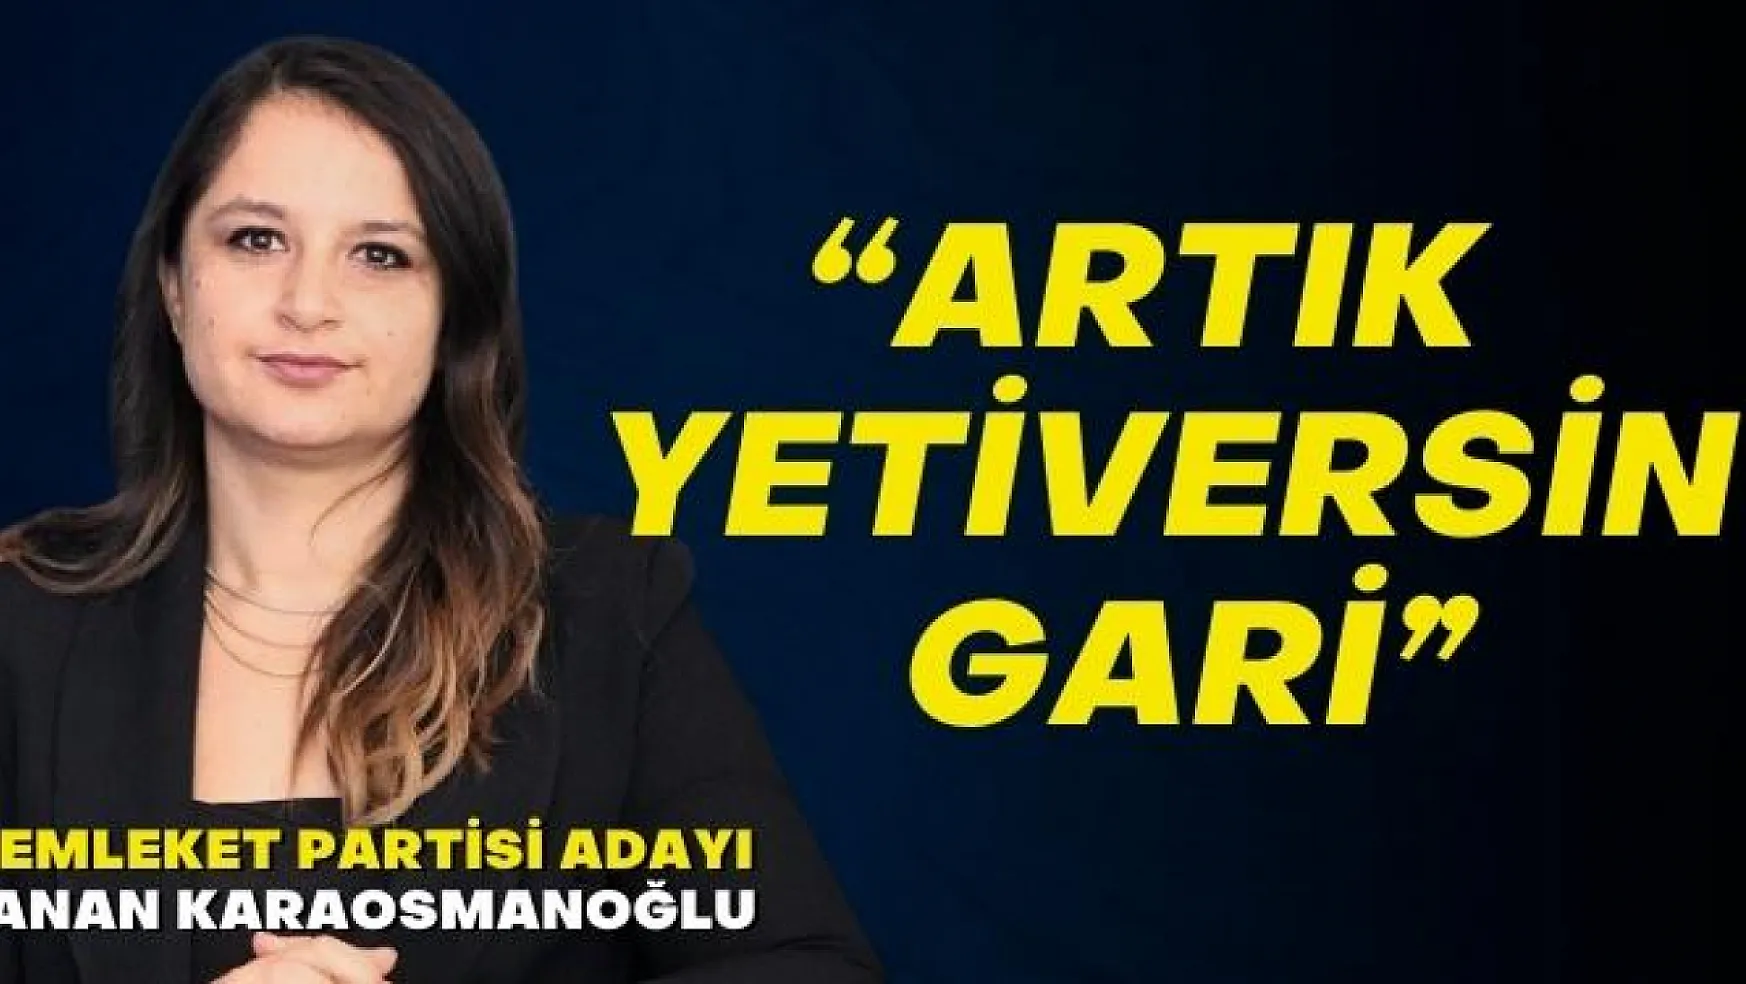 Milletvekili adayı Karaosmanoğlu 'Artık yetiversin gari' 